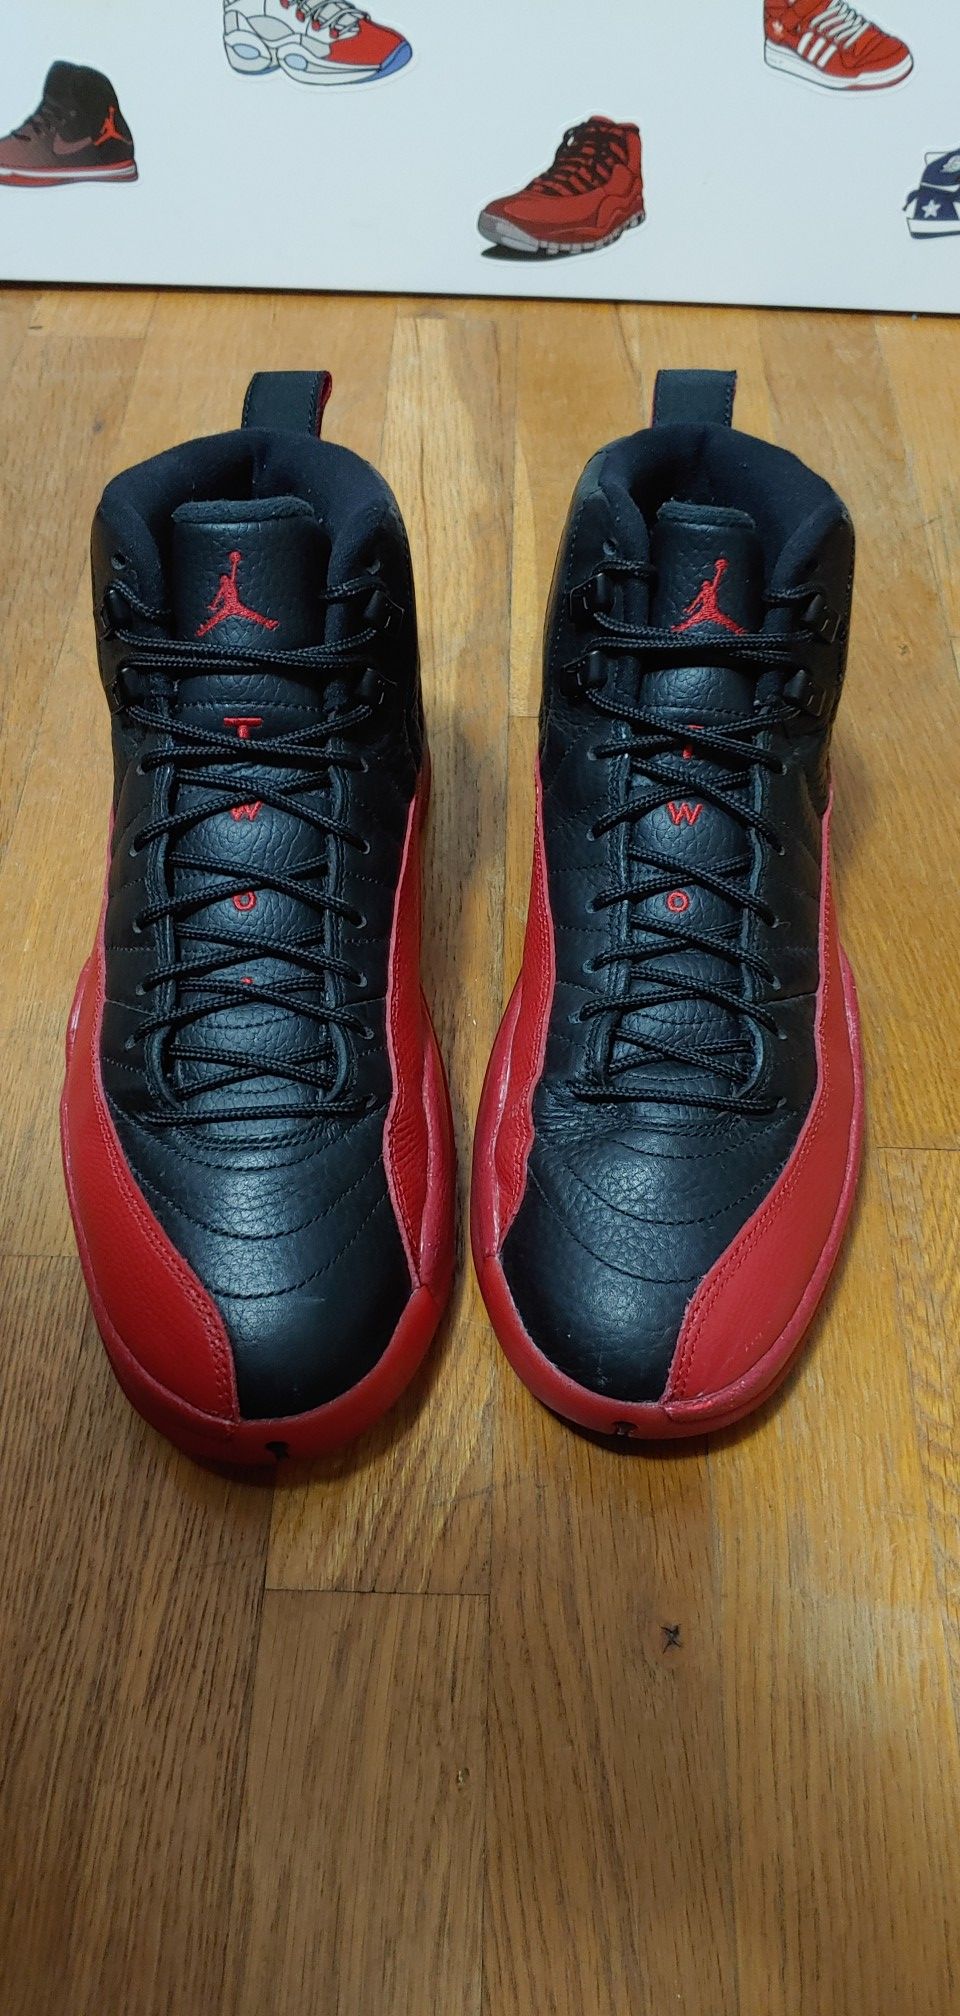 Jordan 12 size 9.5